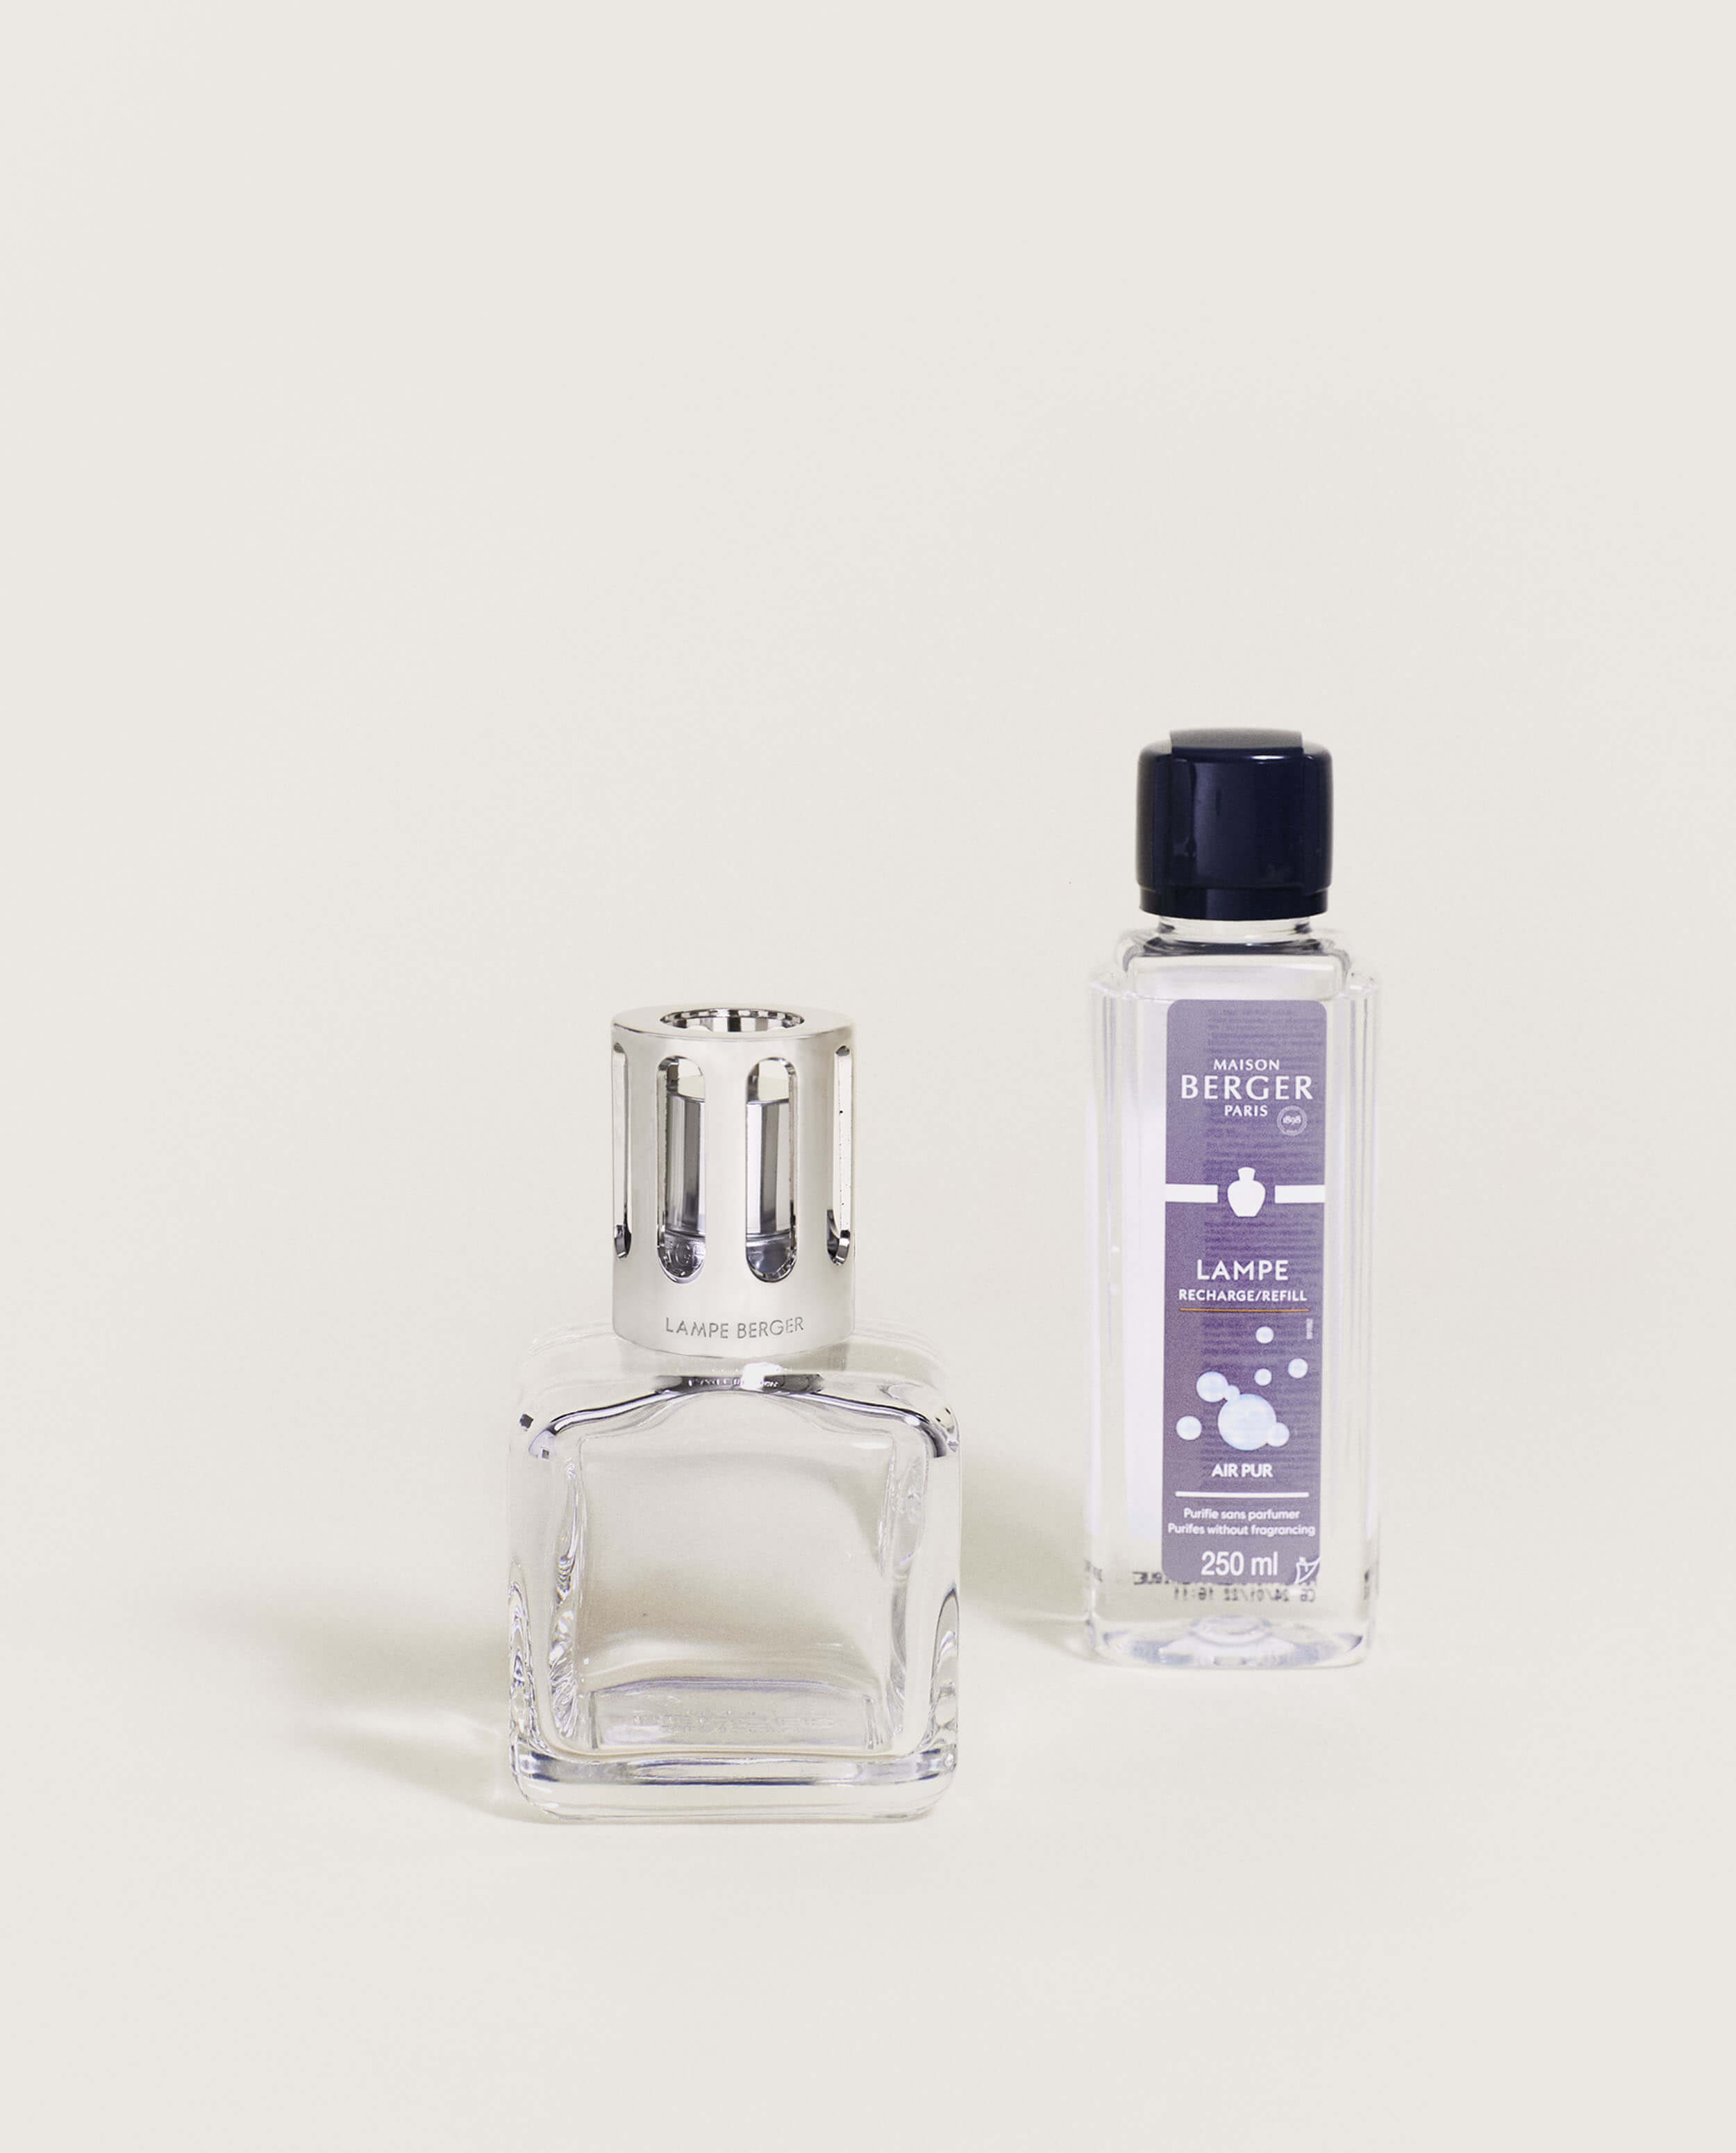 Stoelzle Masnières Parfumerie produces Maison Berger Paris' latest